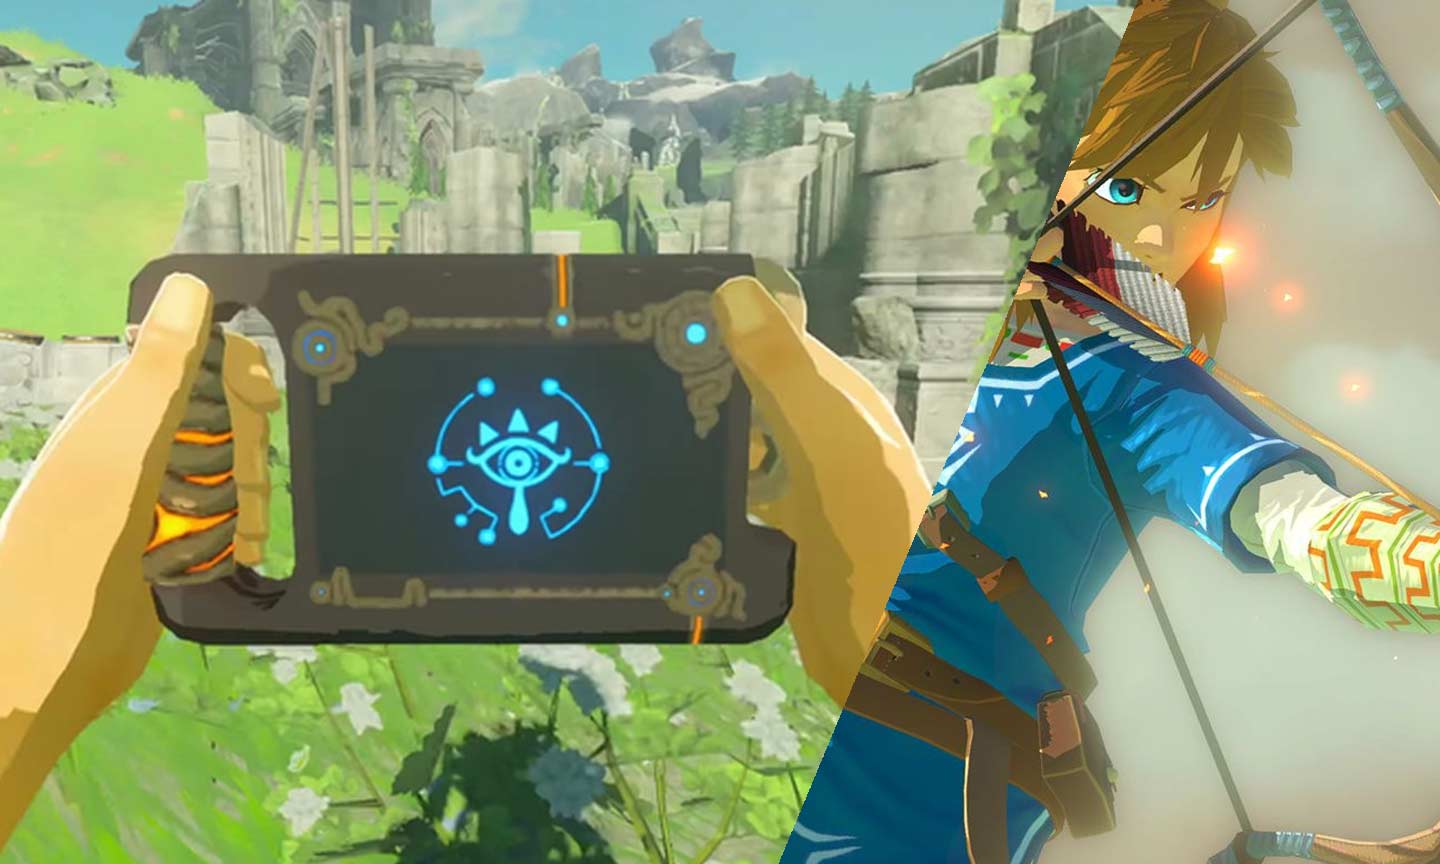 Die Legende von Zelda: Breath of the Wild